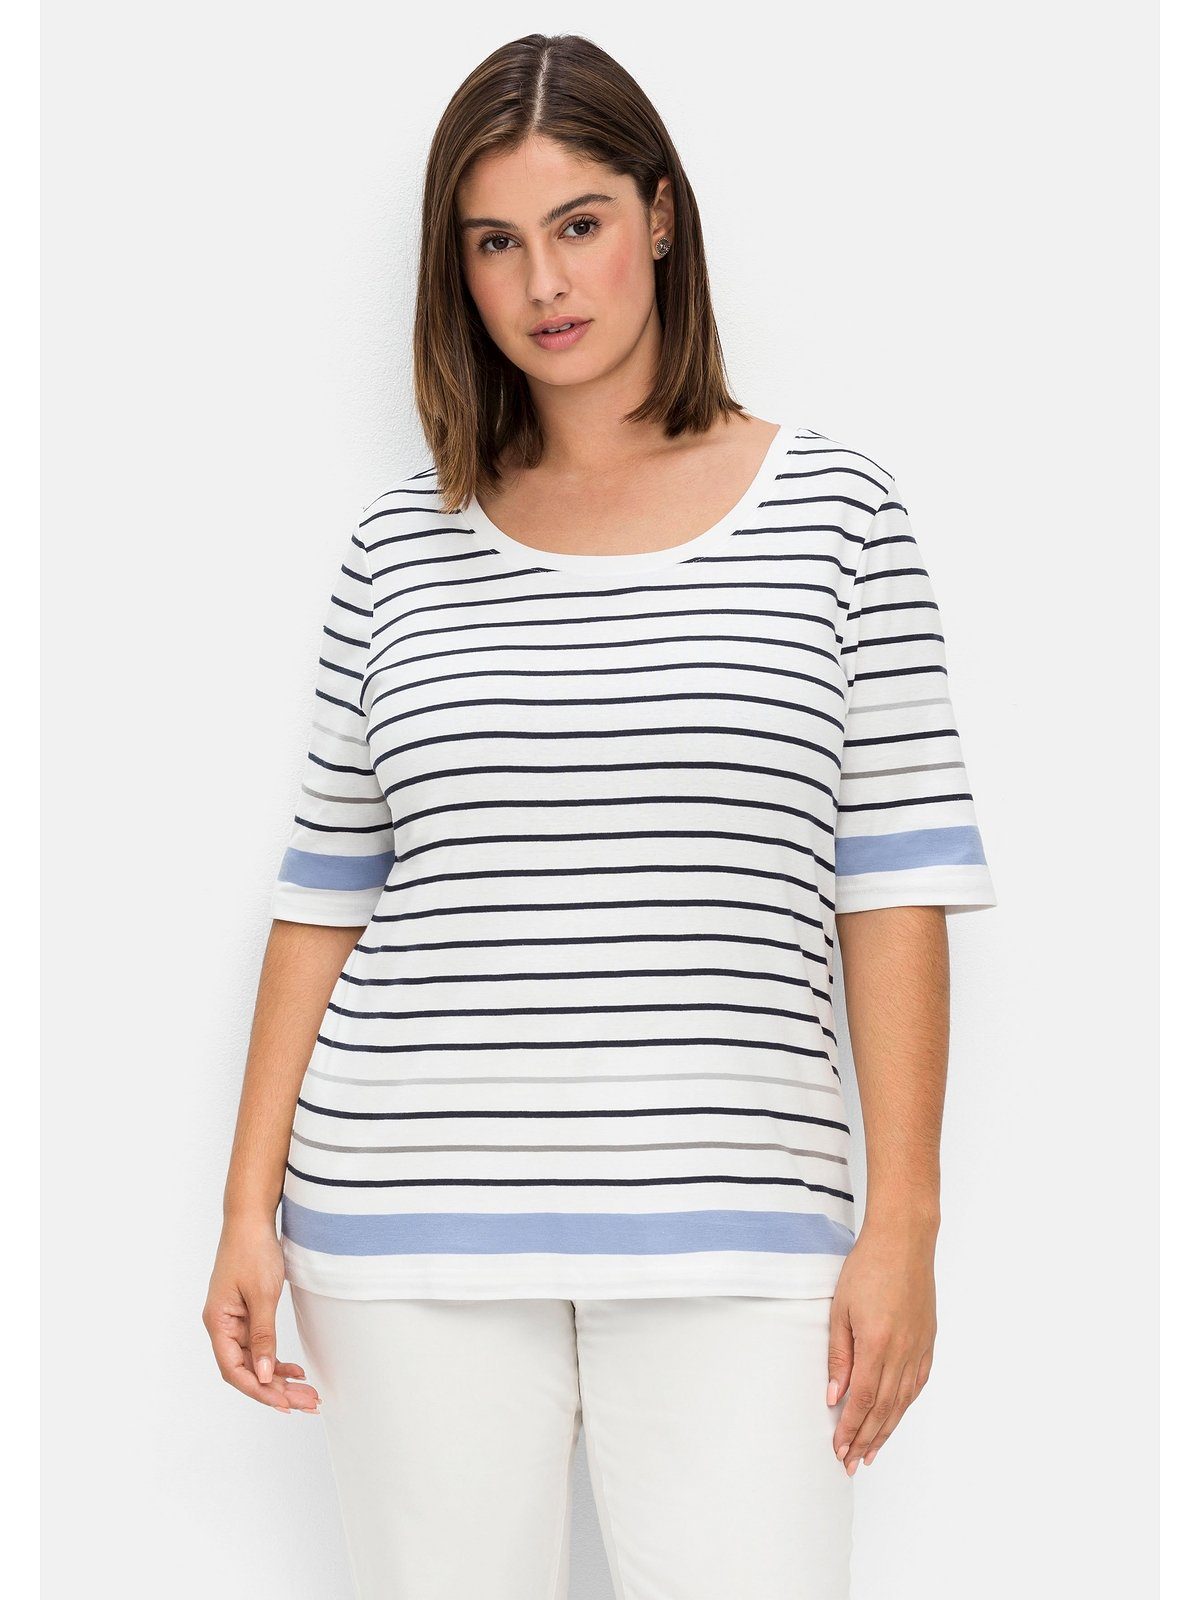 Sheego T-Shirt Große Größen in leicht tailliertem Schnitt, in Rippqualität | V-Shirts